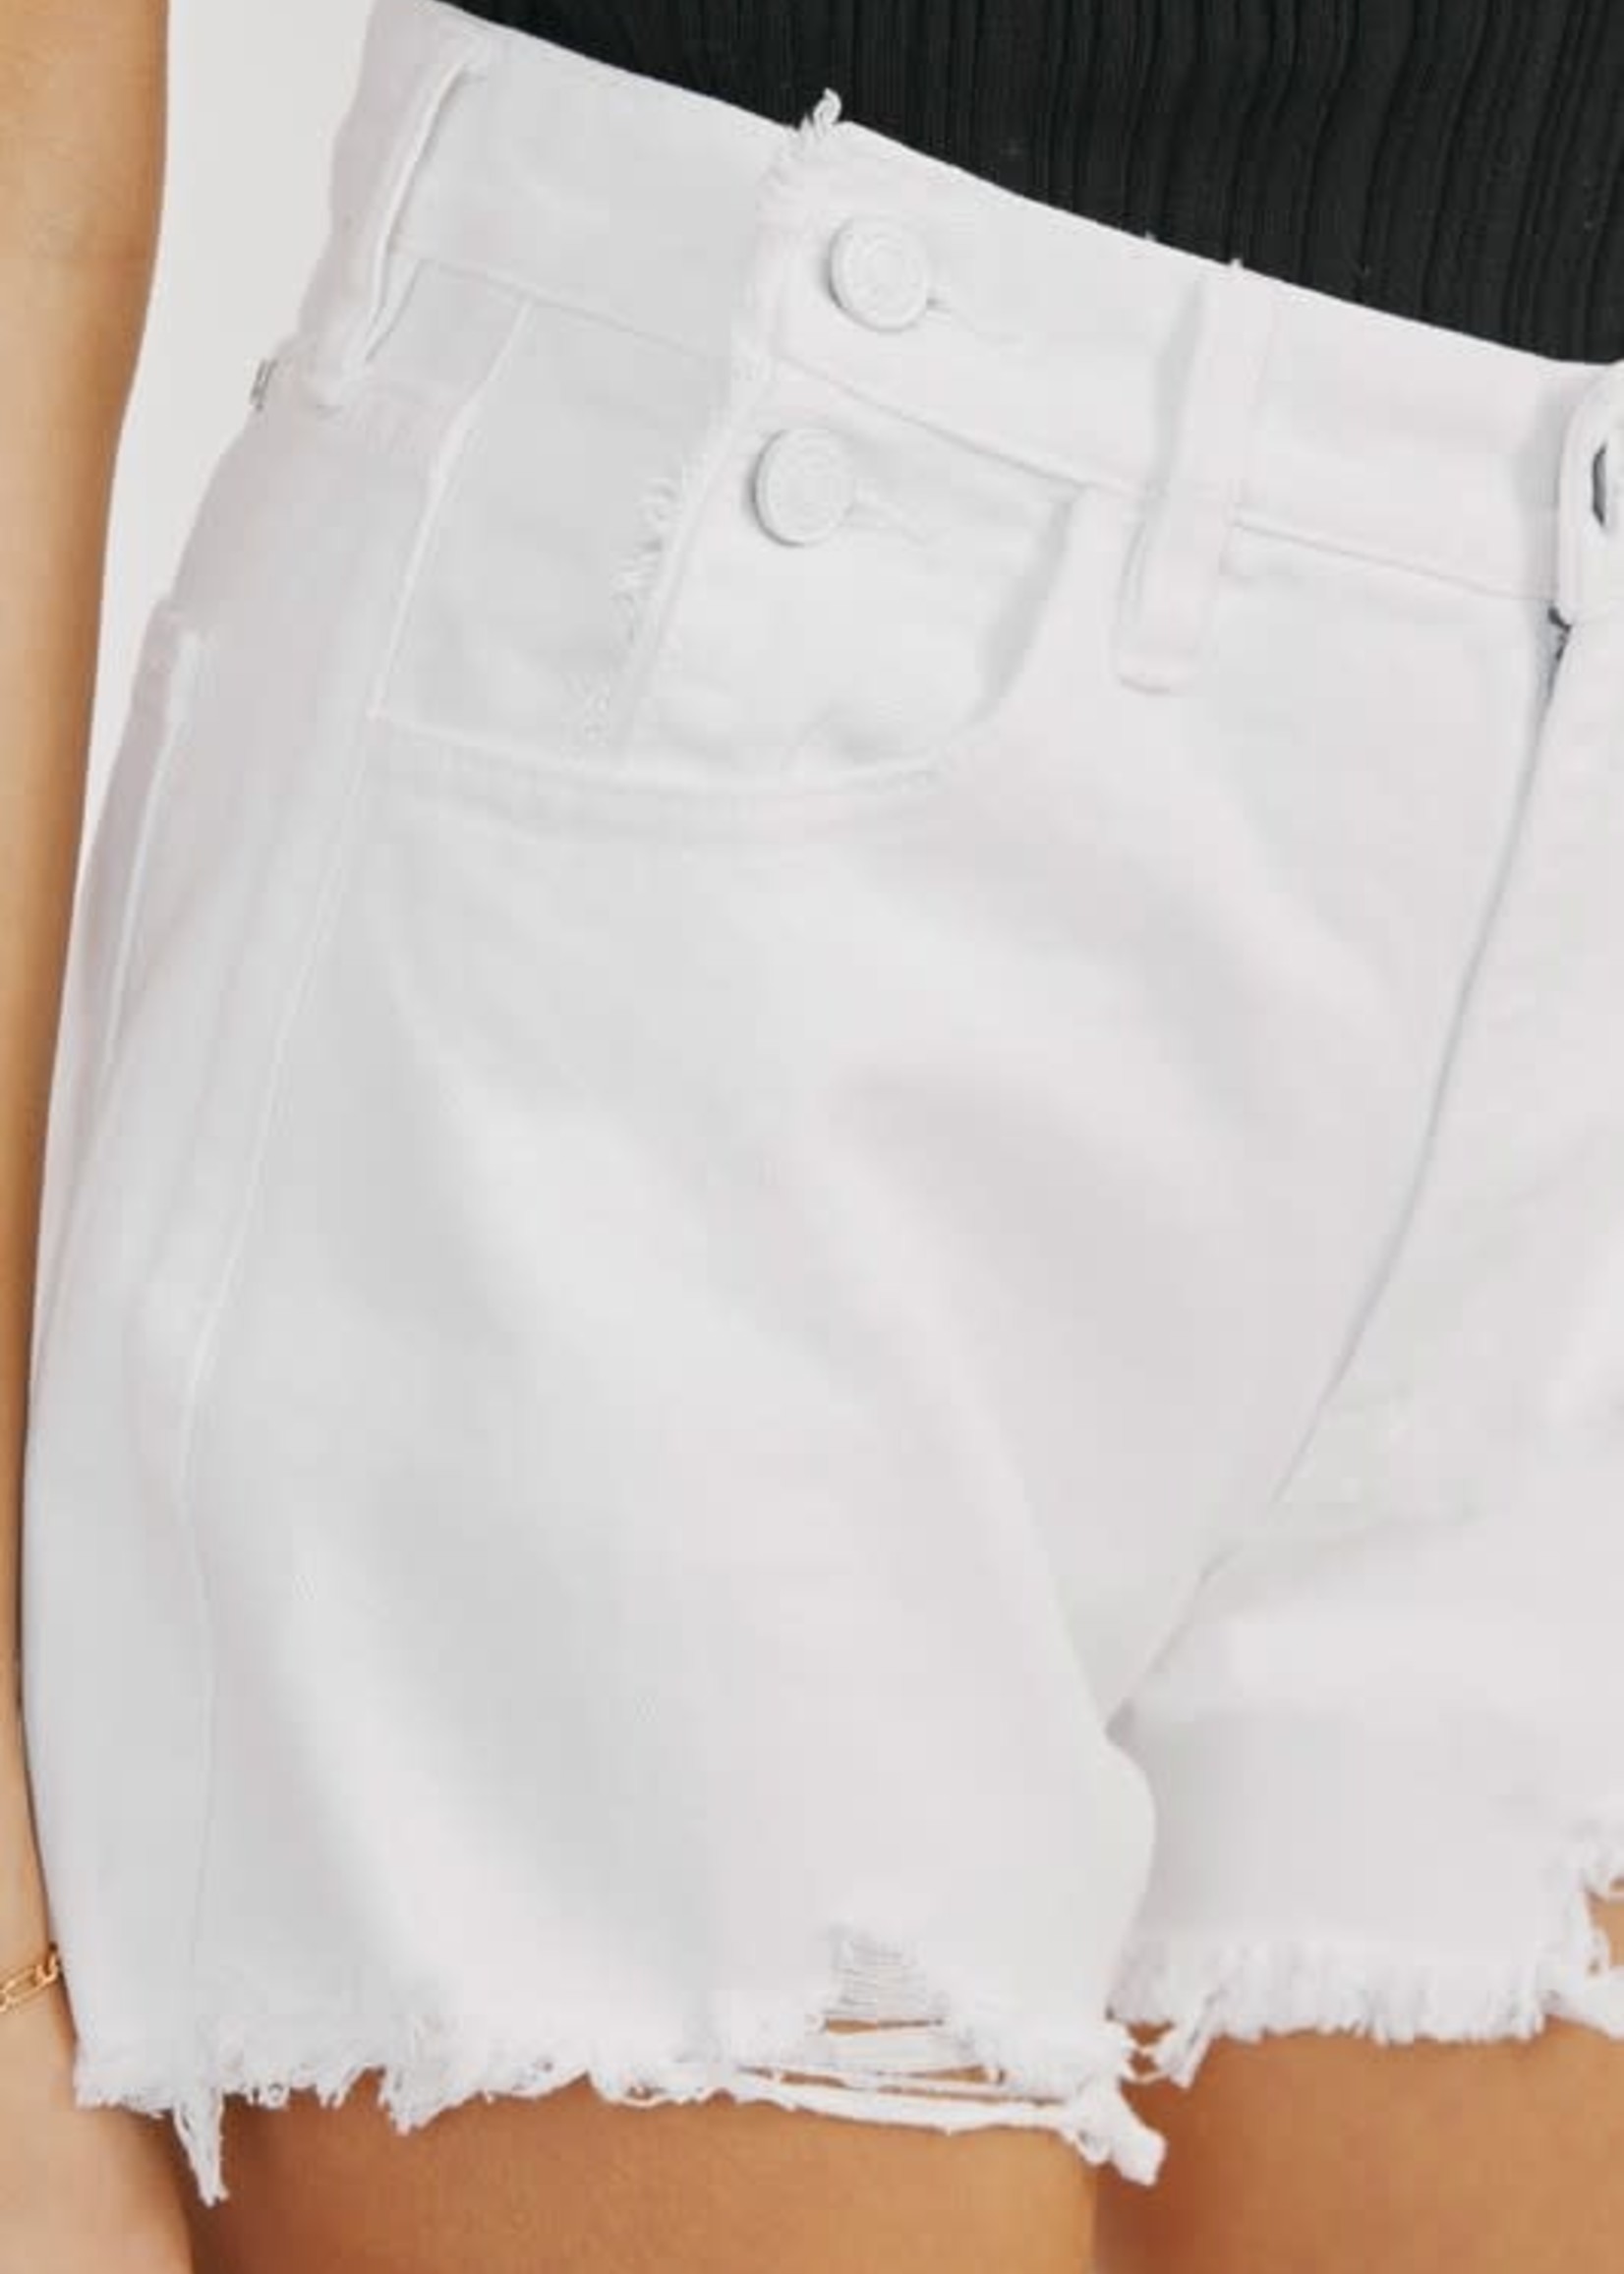 White On Denim Shorts